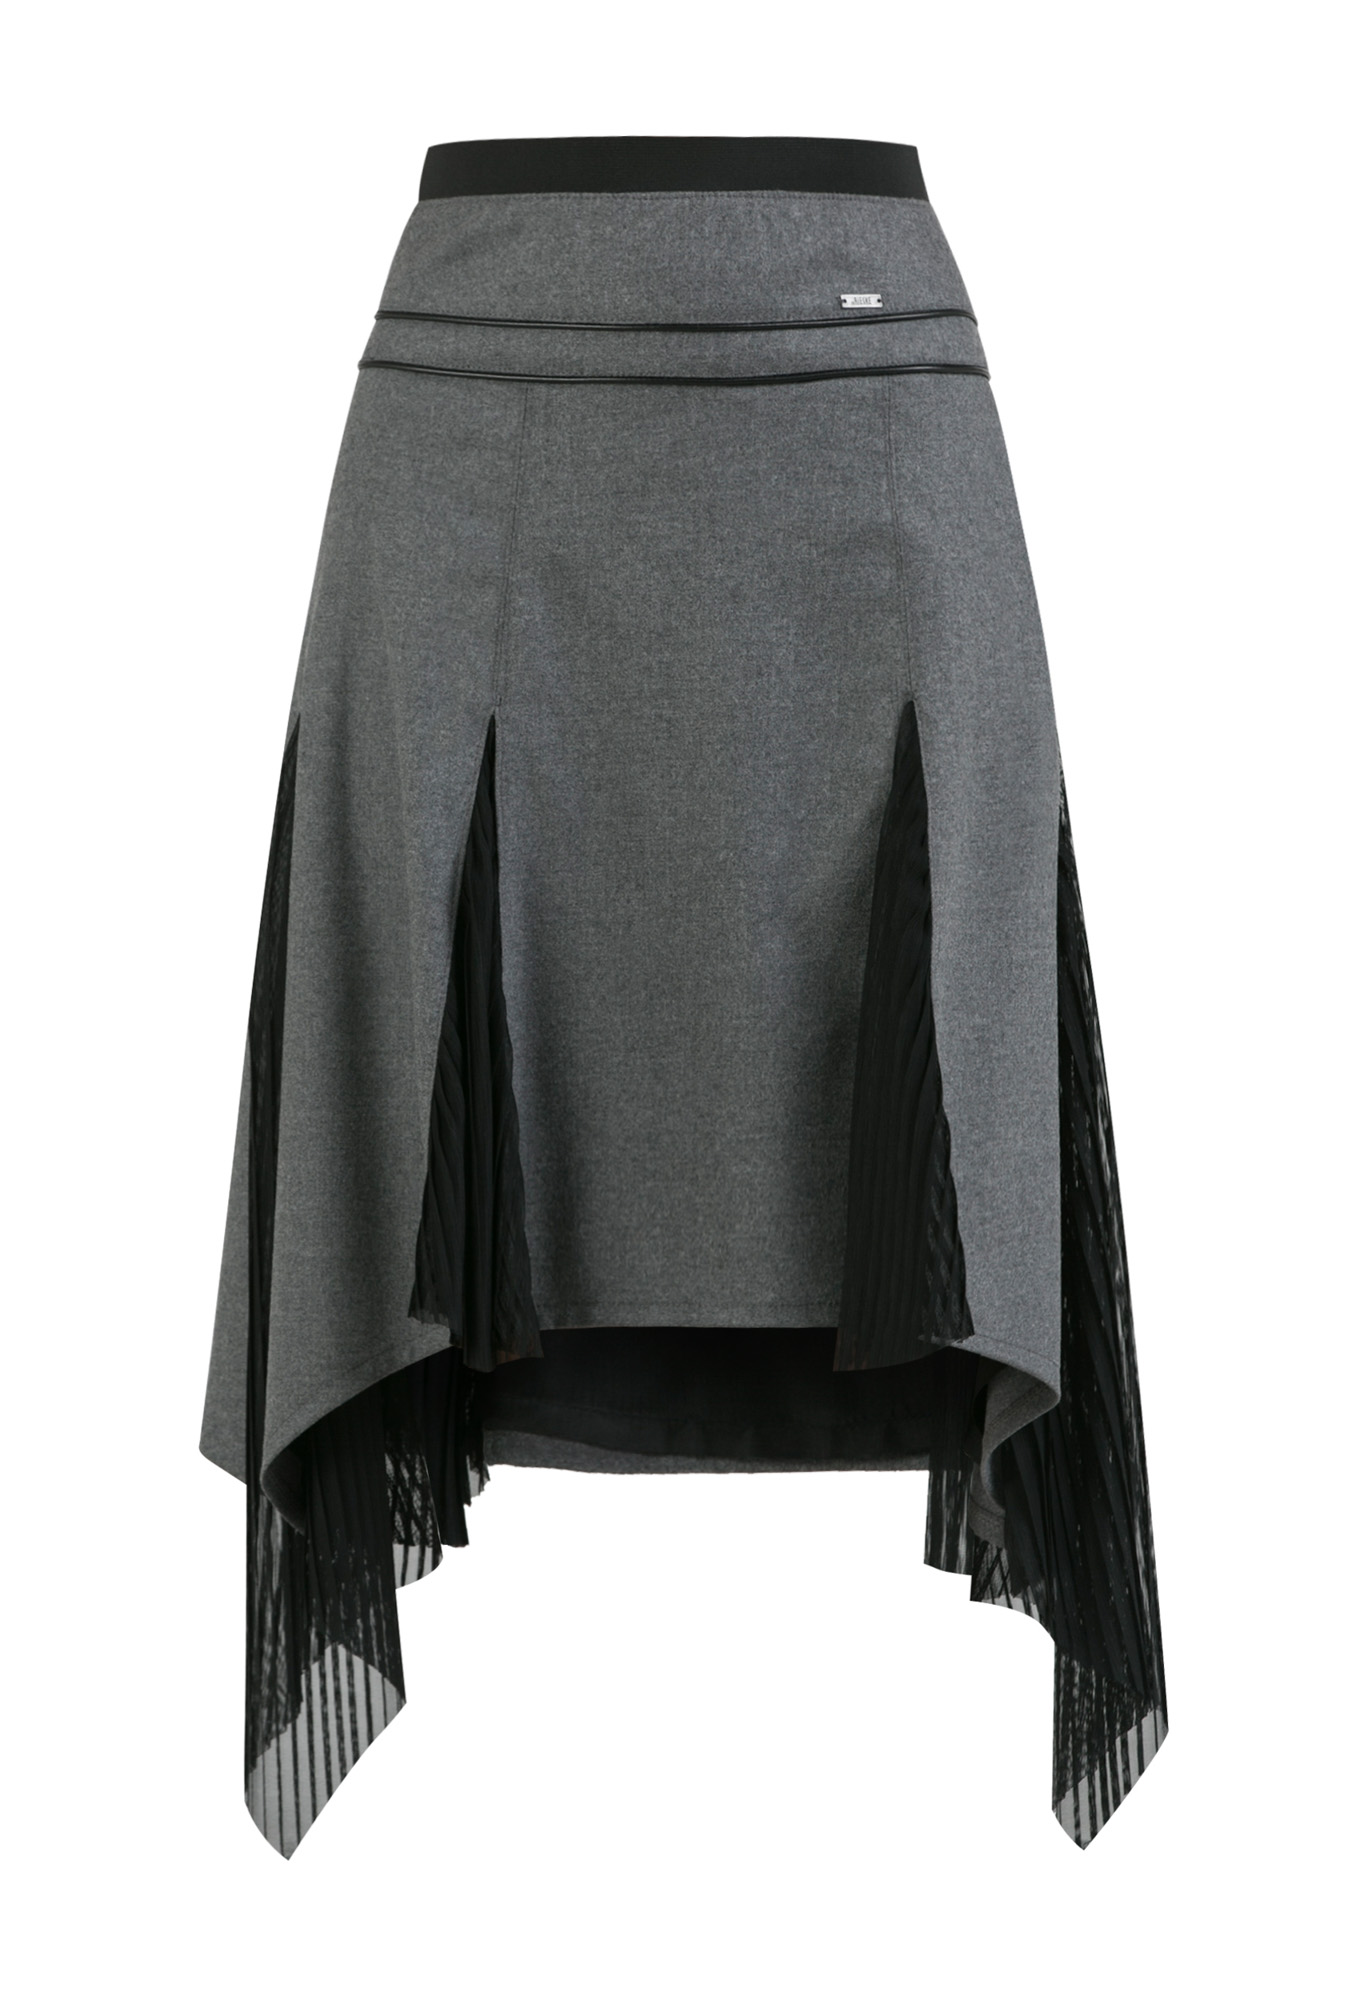 woolen skirt, gray skirt, godet skirt, flared skirt, must have skirt